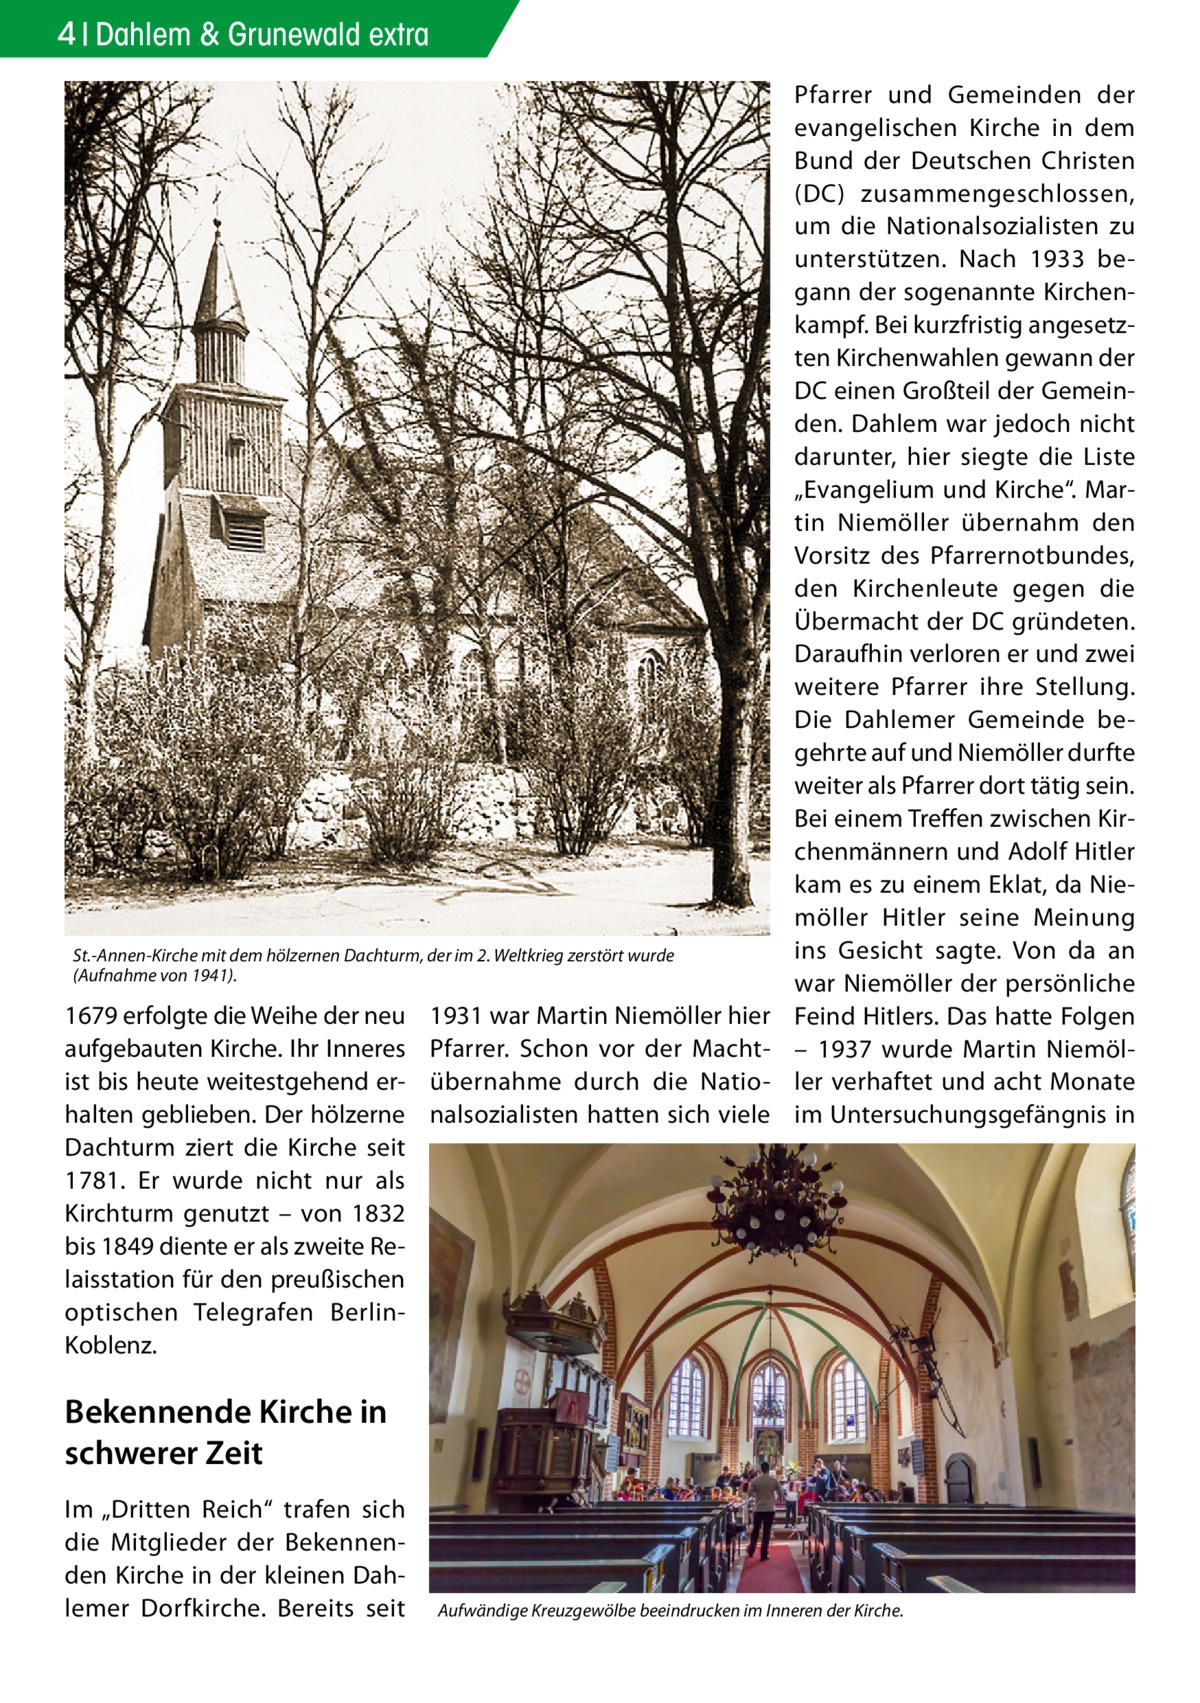 4 Dahlem & Grunewald extra  St.-Annen-Kirche mit dem hölzernen Dachturm, der im 2. Weltkrieg zerstört wurde (Aufnahme von 1941).  1679 erfolgte die Weihe der neu aufgebauten Kirche. Ihr Inneres ist bis heute weitestgehend erhalten geblieben. Der hölzerne Dachturm ziert die Kirche seit 1781. Er wurde nicht nur als Kirchturm genutzt – von 1832 bis 1849 diente er als zweite Relaisstation für den preußischen optischen Telegrafen BerlinKoblenz.  1931 war Martin Niemöller hier Pfarrer. Schon vor der Machtübernahme durch die Nationalsozialisten hatten sich viele  Pfarrer und Gemeinden der evangelischen Kirche in dem Bund der Deutschen Christen (DC) zusammengeschlossen, um die Nationalsozialisten zu unterstützen. Nach 1933 begann der sogenannte Kirchenkampf. Bei kurzfristig angesetzten Kirchenwahlen gewann der DC einen Großteil der Gemeinden. Dahlem war jedoch nicht darunter, hier siegte die Liste „Evangelium und Kirche“. Martin Niemöller übernahm den Vorsitz des Pfarrernotbundes, den Kirchenleute gegen die Übermacht der DC gründeten. Daraufhin verloren er und zwei weitere Pfarrer ihre Stellung. Die Dahlemer Gemeinde begehrte auf und Niemöller durfte weiter als Pfarrer dort tätig sein. Bei einem Treffen zwischen Kirchenmännern und Adolf Hitler kam es zu einem Eklat, da Niemöller Hitler seine Meinung ins Gesicht sagte. Von da an war Niemöller der persönliche Feind Hitlers. Das hatte Folgen – 1937 wurde Martin Niemöller verhaftet und acht Monate im Untersuchungsgefängnis in  Bekennende Kirche in schwerer Zeit Im „Dritten Reich“ trafen sich die Mitglieder der Bekennenden Kirche in der kleinen Dahlemer Dorfkirche. Bereits seit  Aufwändige Kreuzgewölbe beeindrucken im Inneren der Kirche.